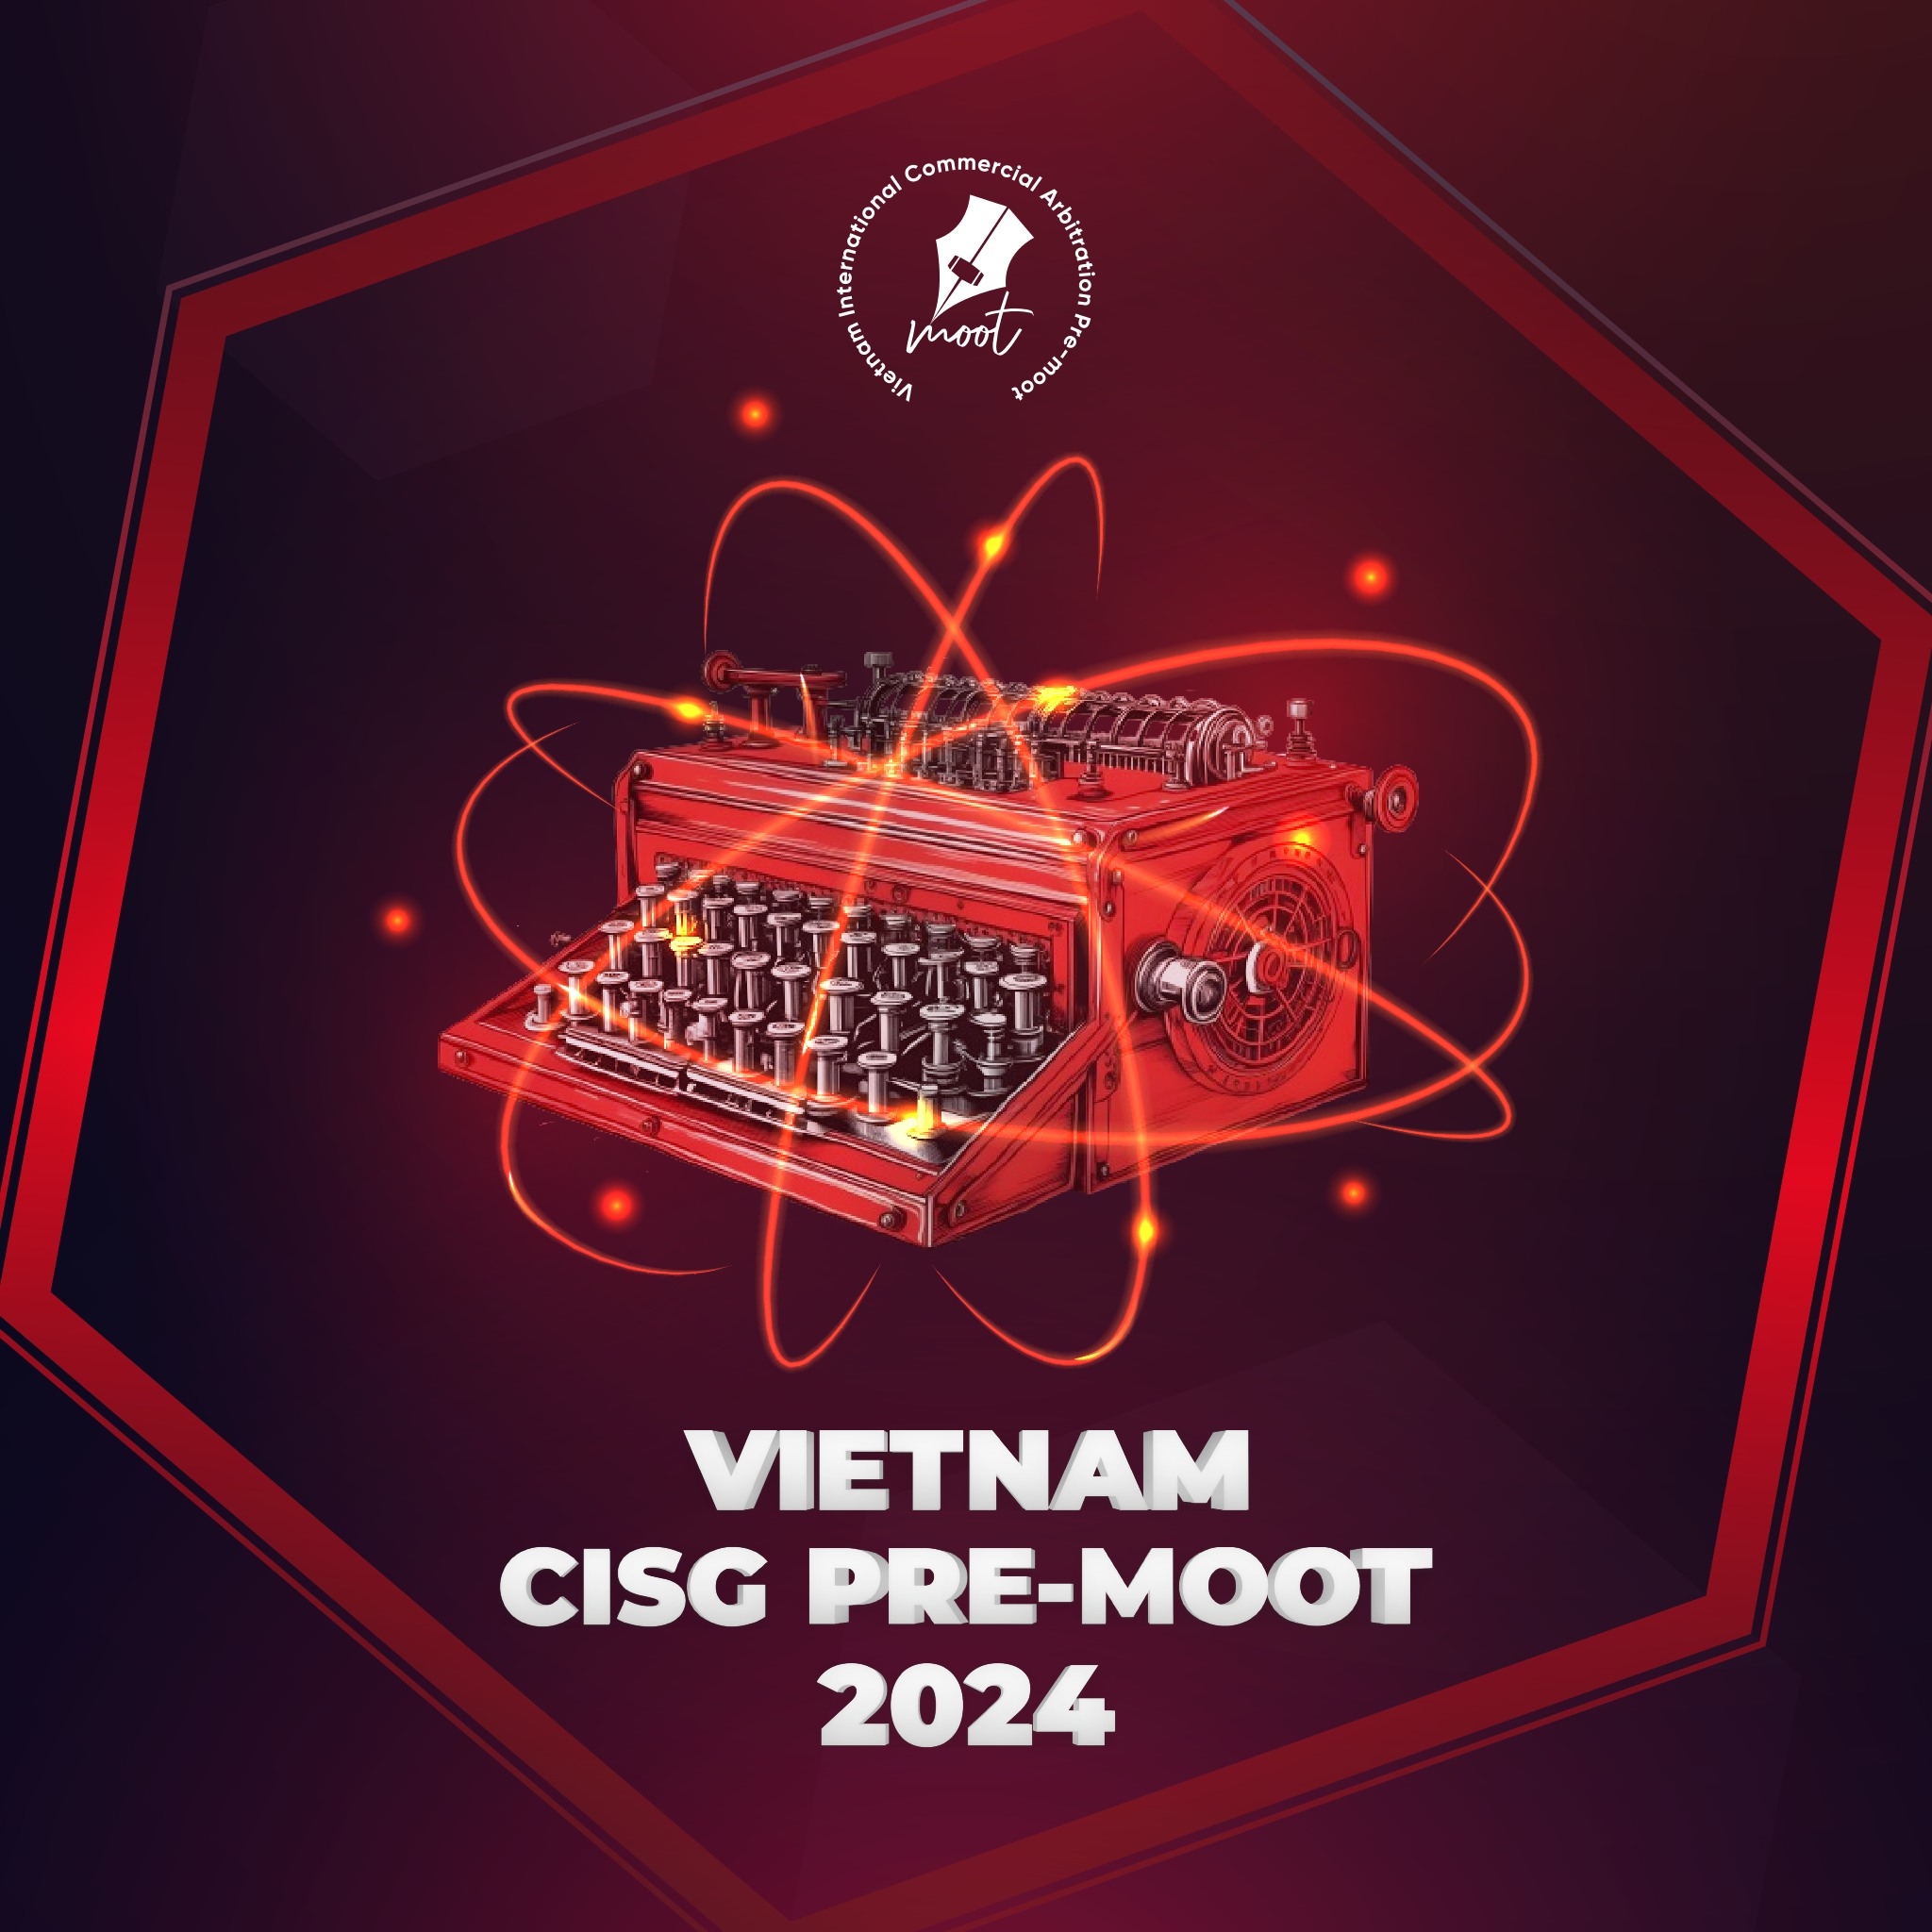 Vietnam CISG Pre-Moot 2024